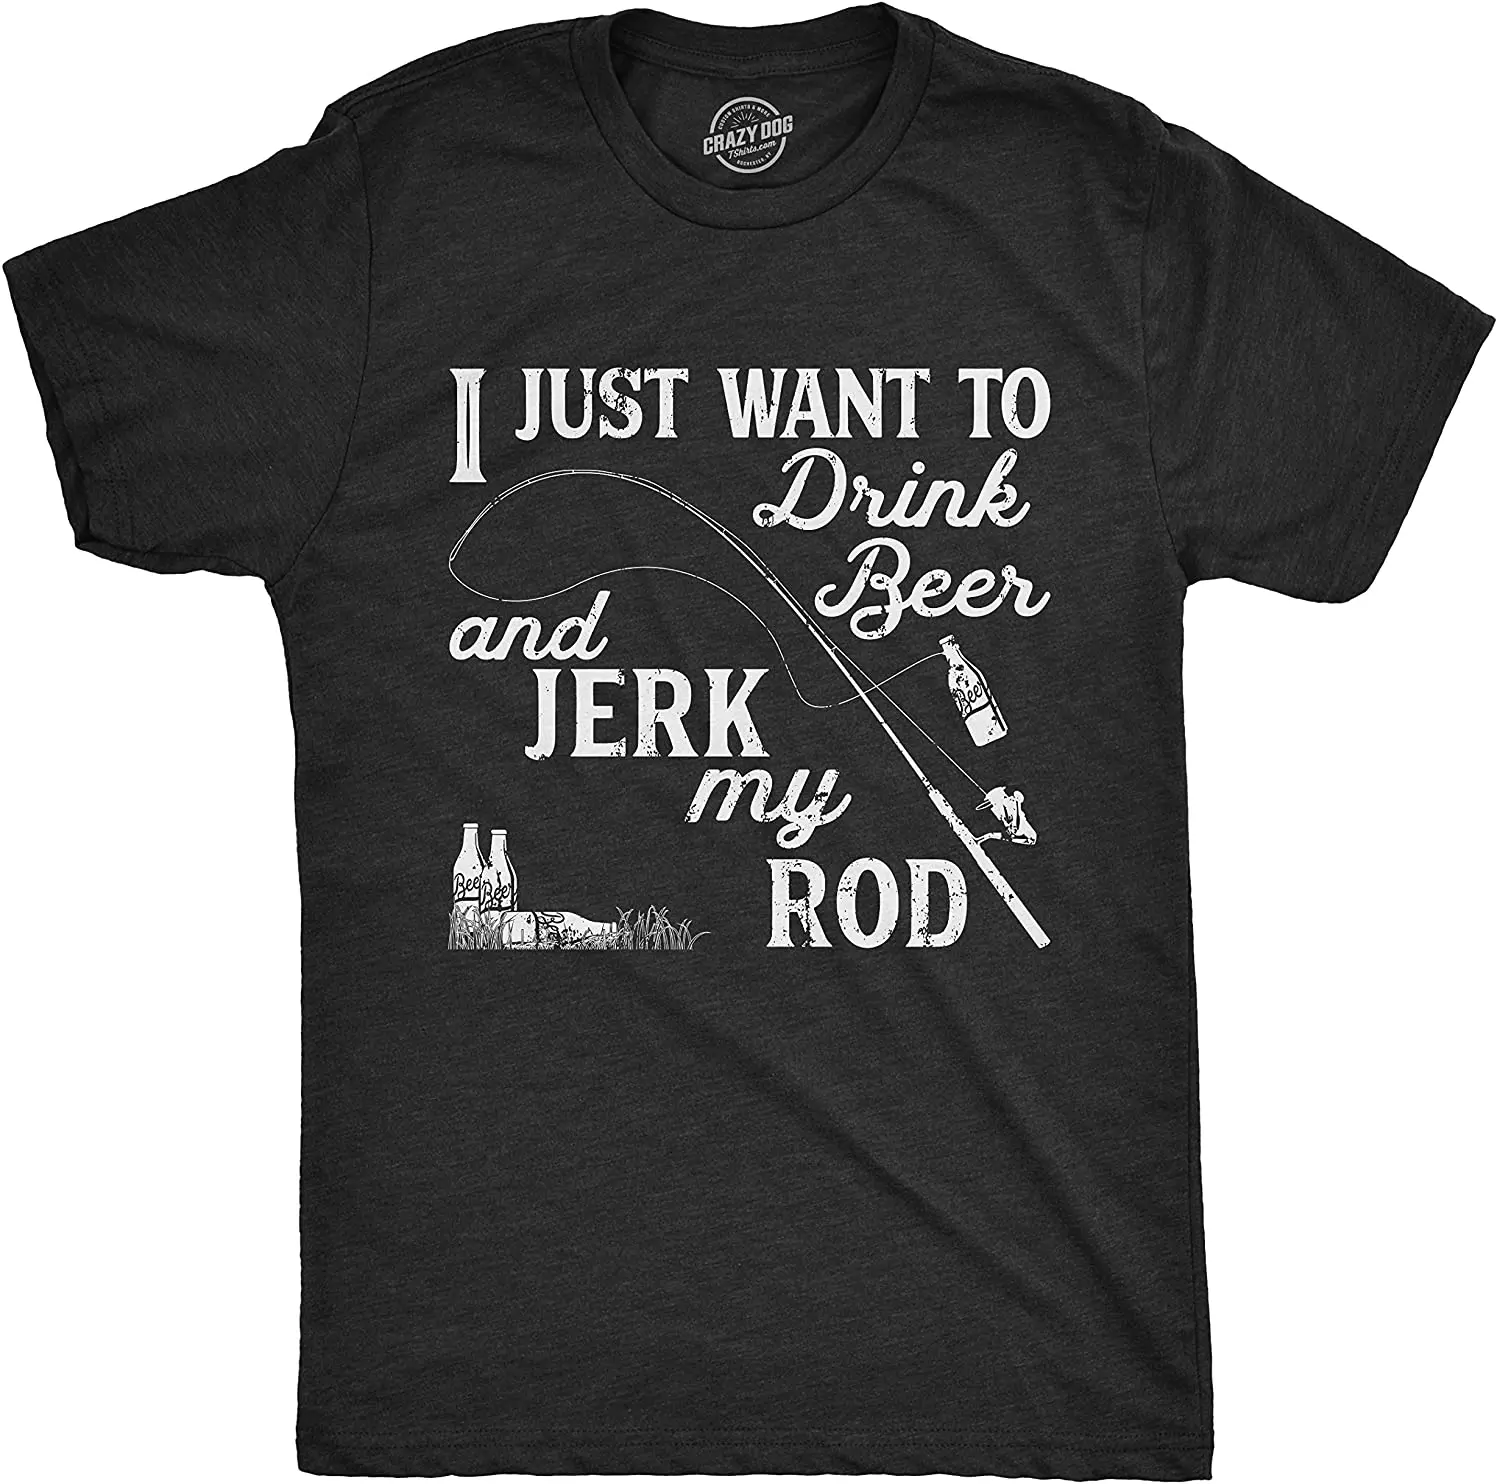 

Мужская футболка с надписью «Я просто хочу пить пиво и вскрыть удочку», забавная Классическая футболка с коротким рукавом и графическим при...